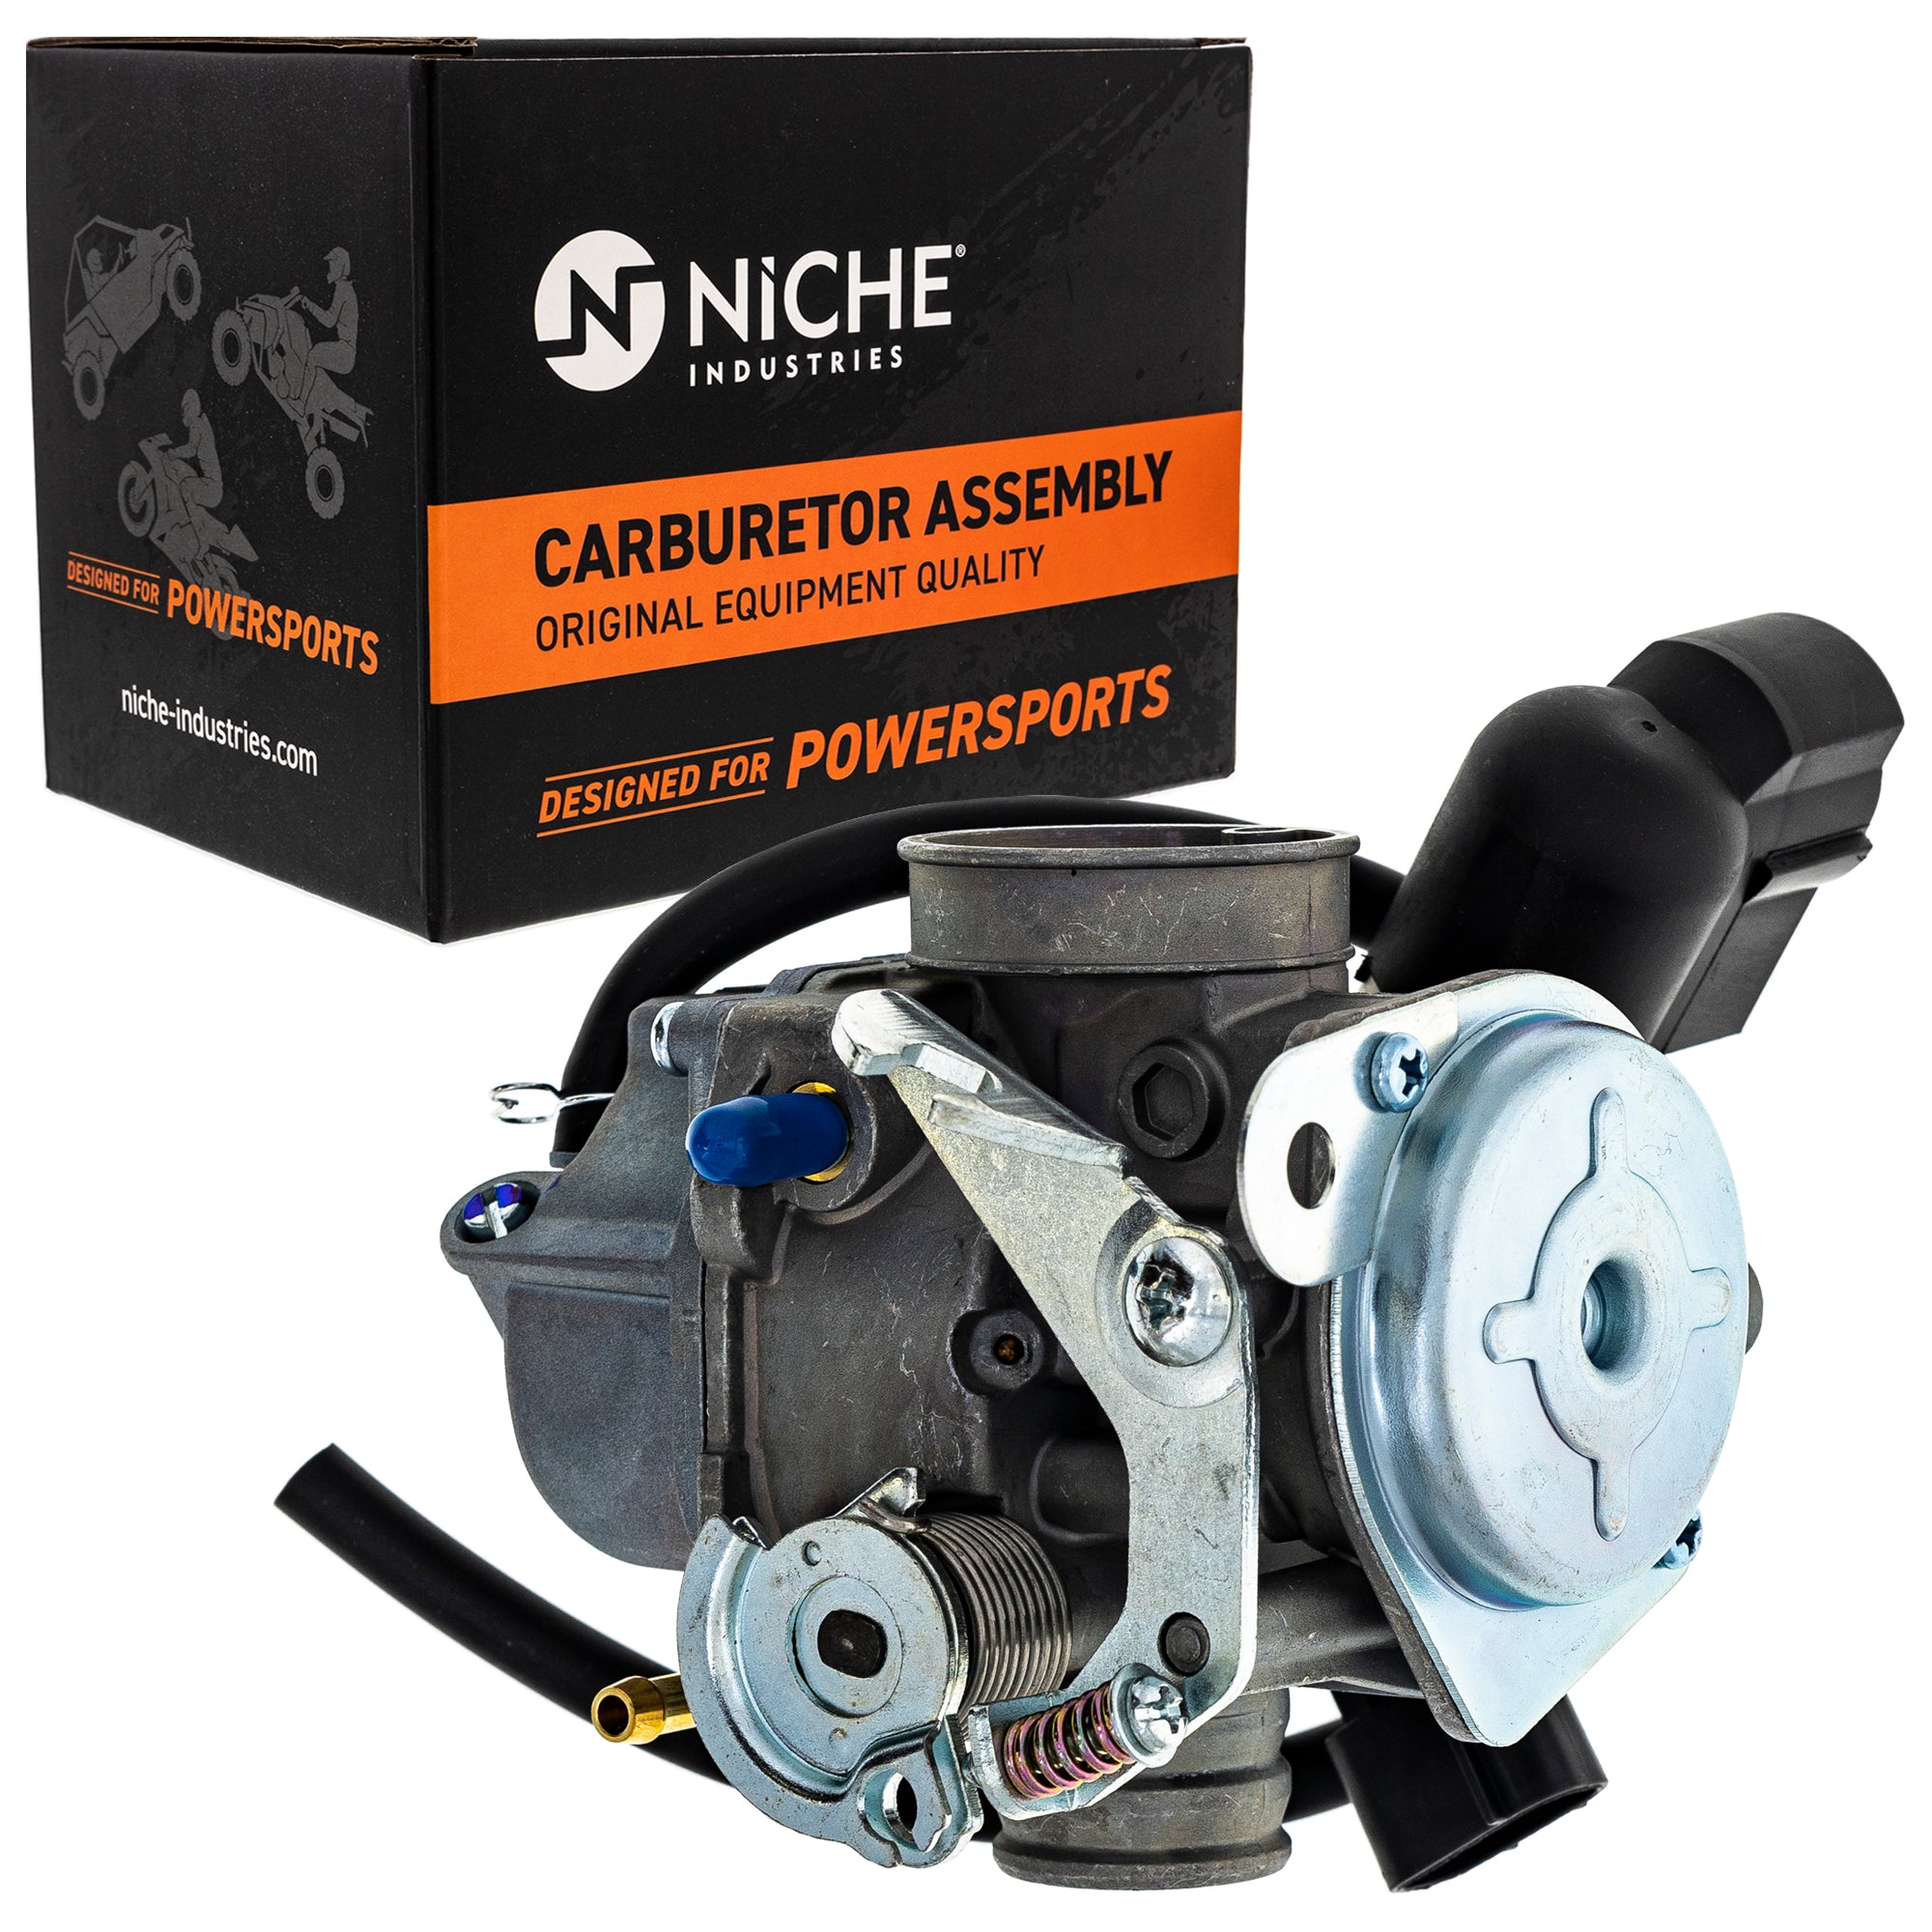 NICHE Carburetor Assembly 16100-GEZ-673 16100-GEZ-672